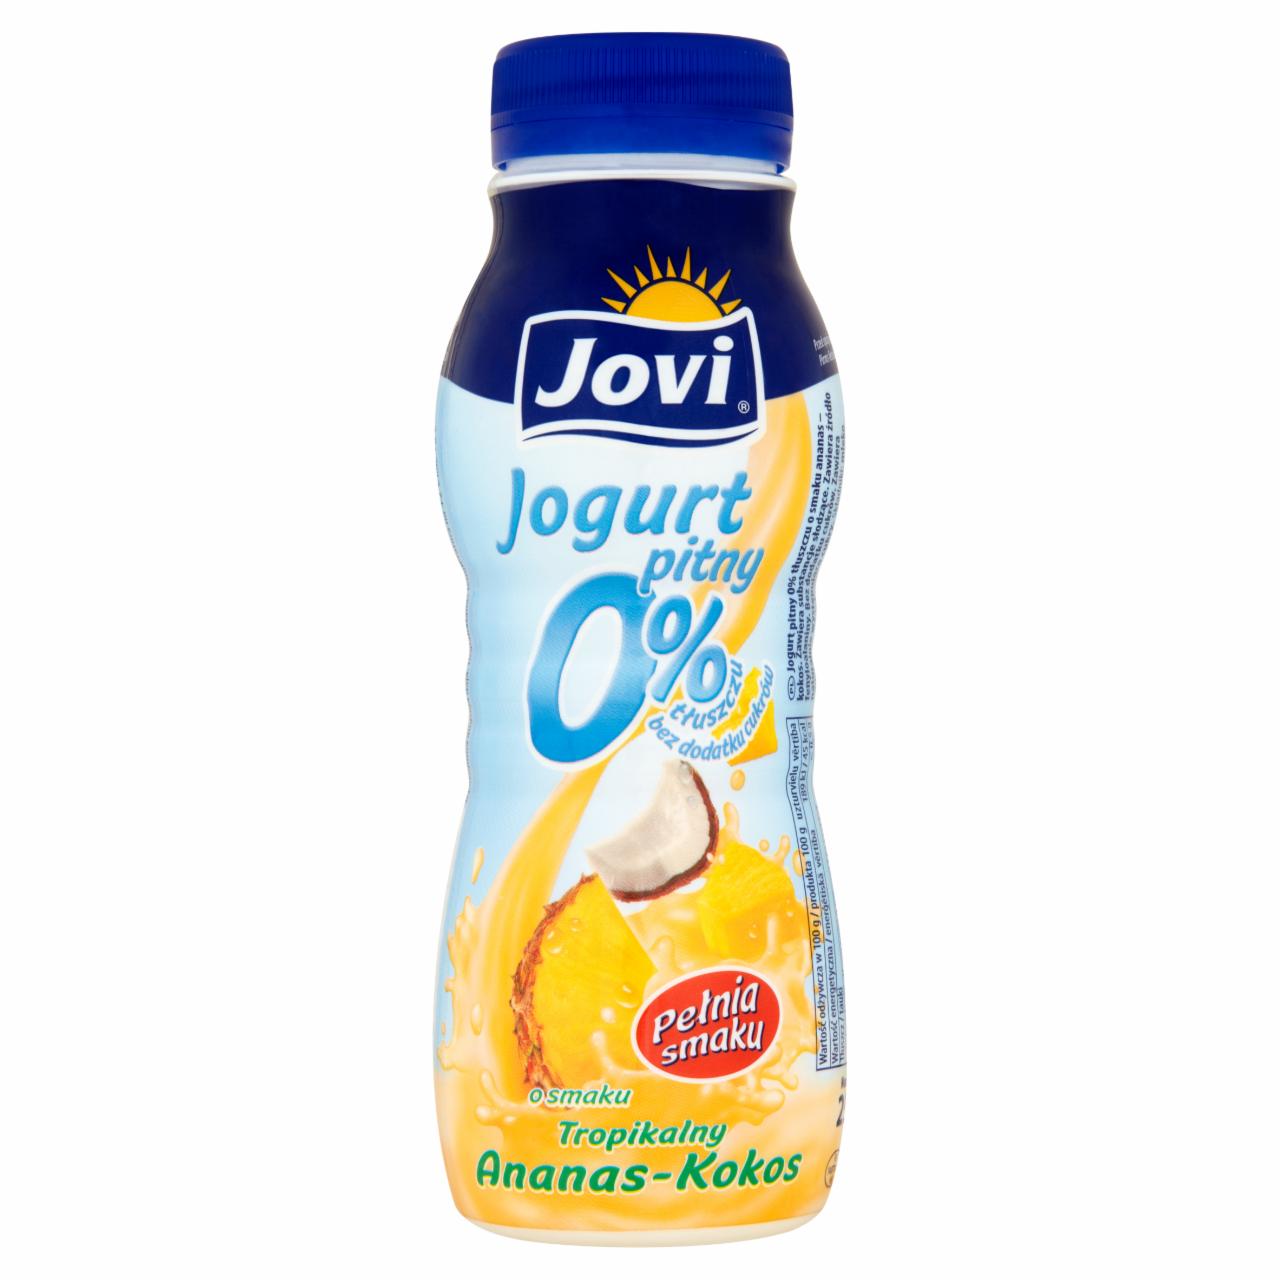 Zdjęcia - Jovi Jogurt pitny 0% o smaku tropikalny ananas-kokos 250 g